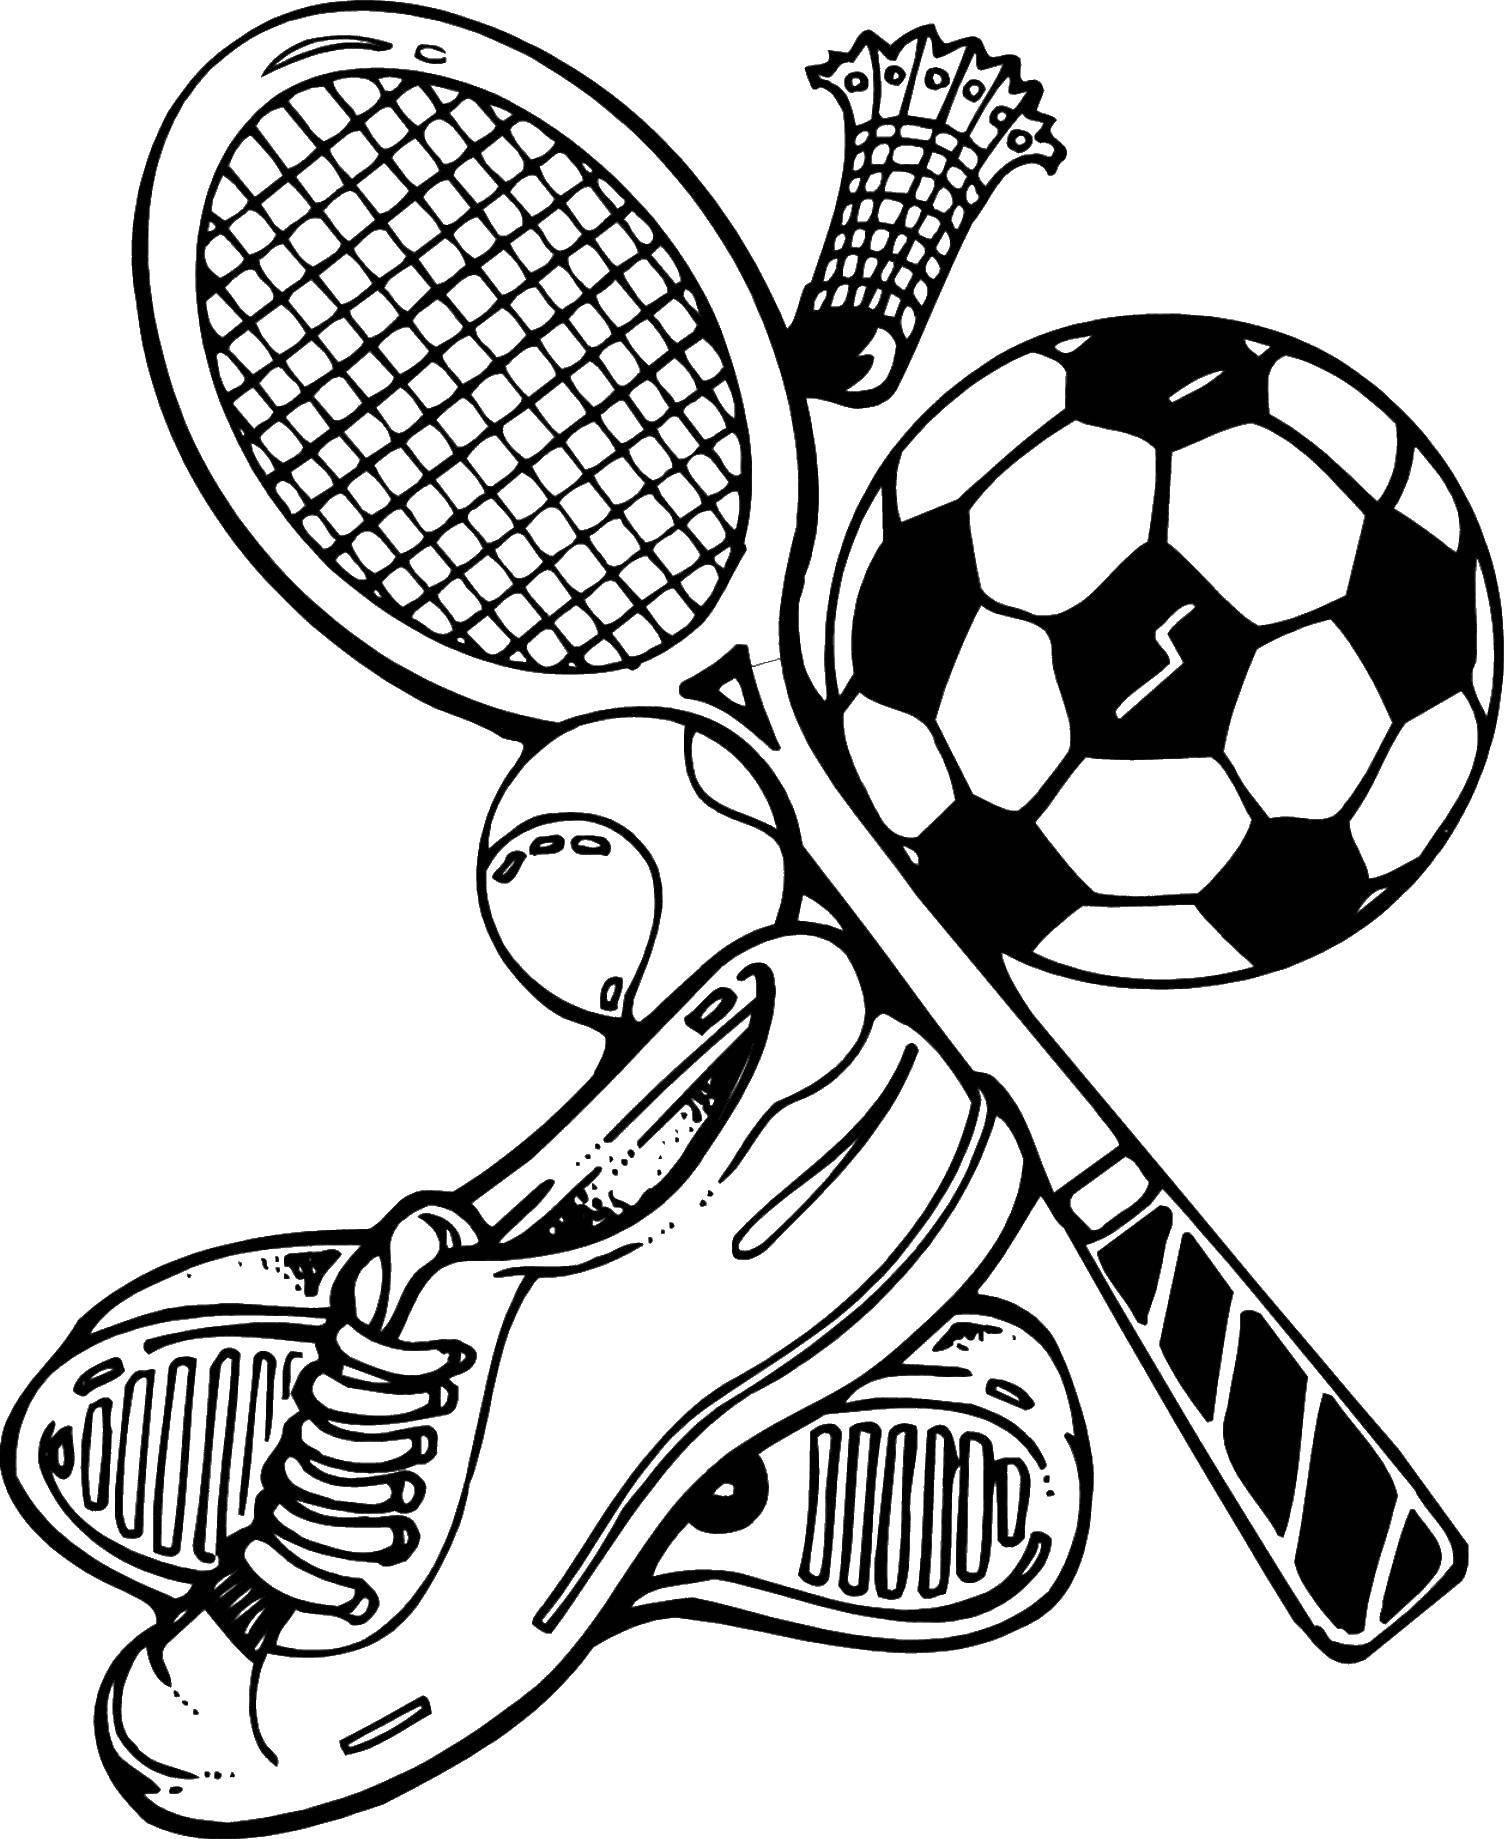 Название: Раскраска Теннисная ракетка, обувь и мячик. Категория: Спорт. Теги: Спорт, теннис, ракетка.